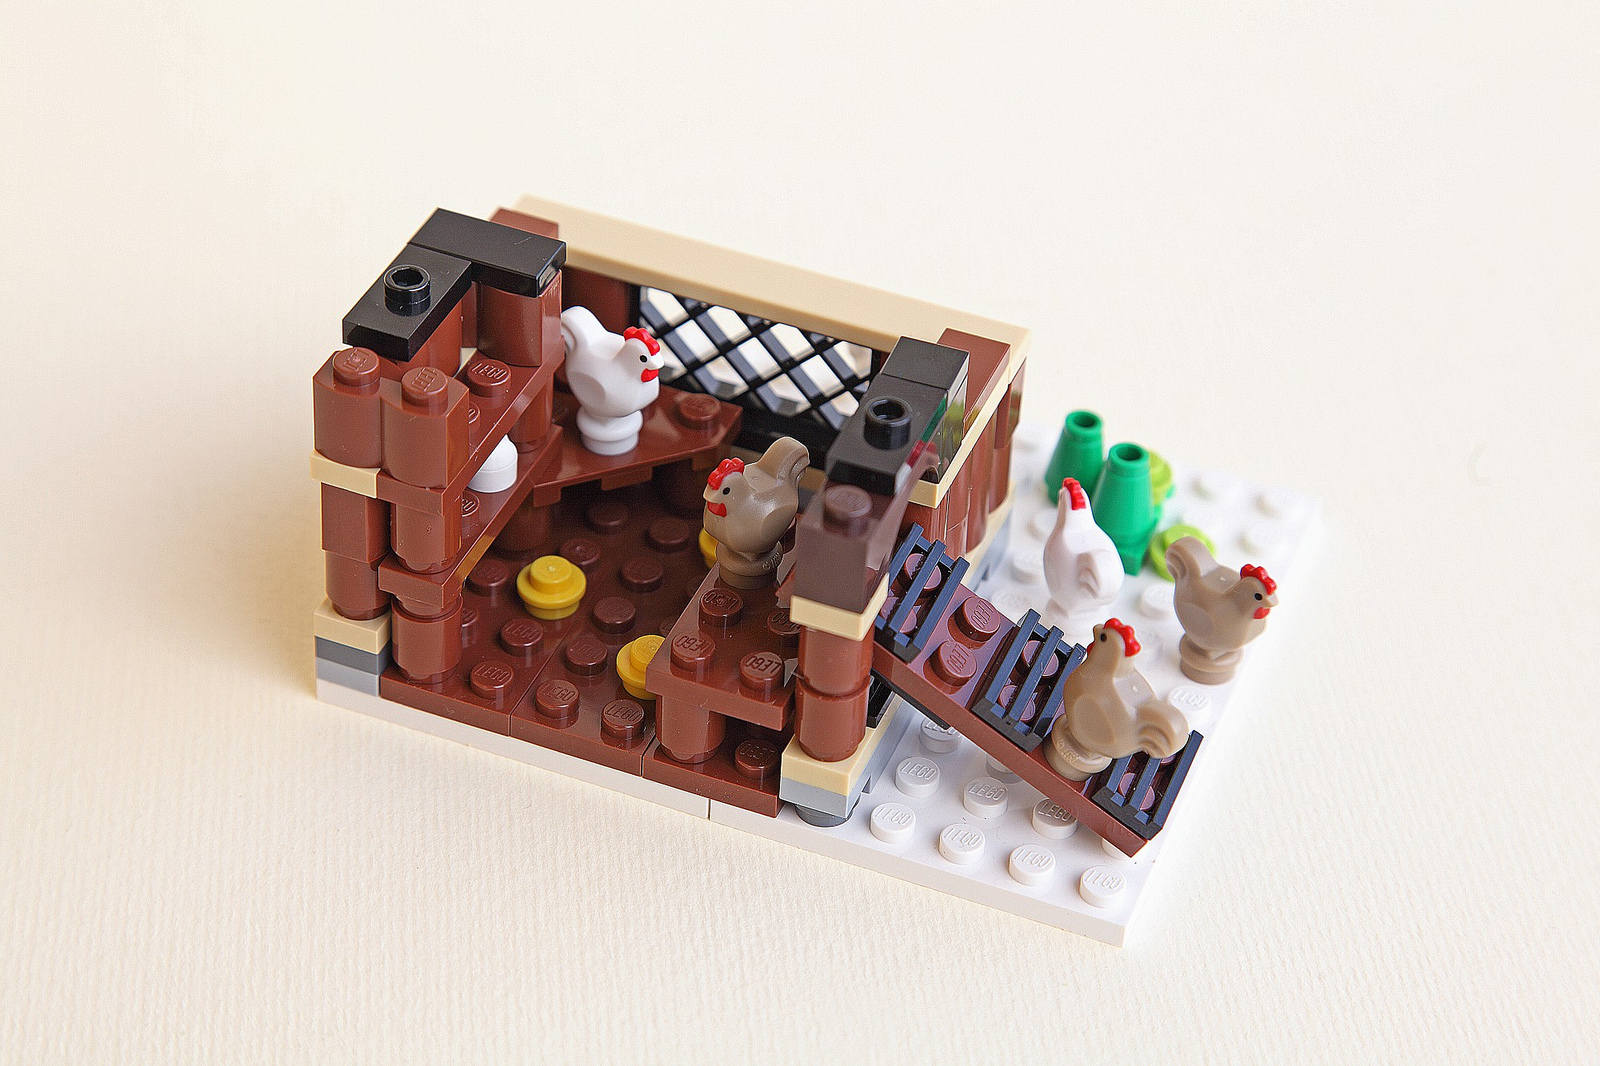 LEGO Ideas: Winter Farm - The Family Brick